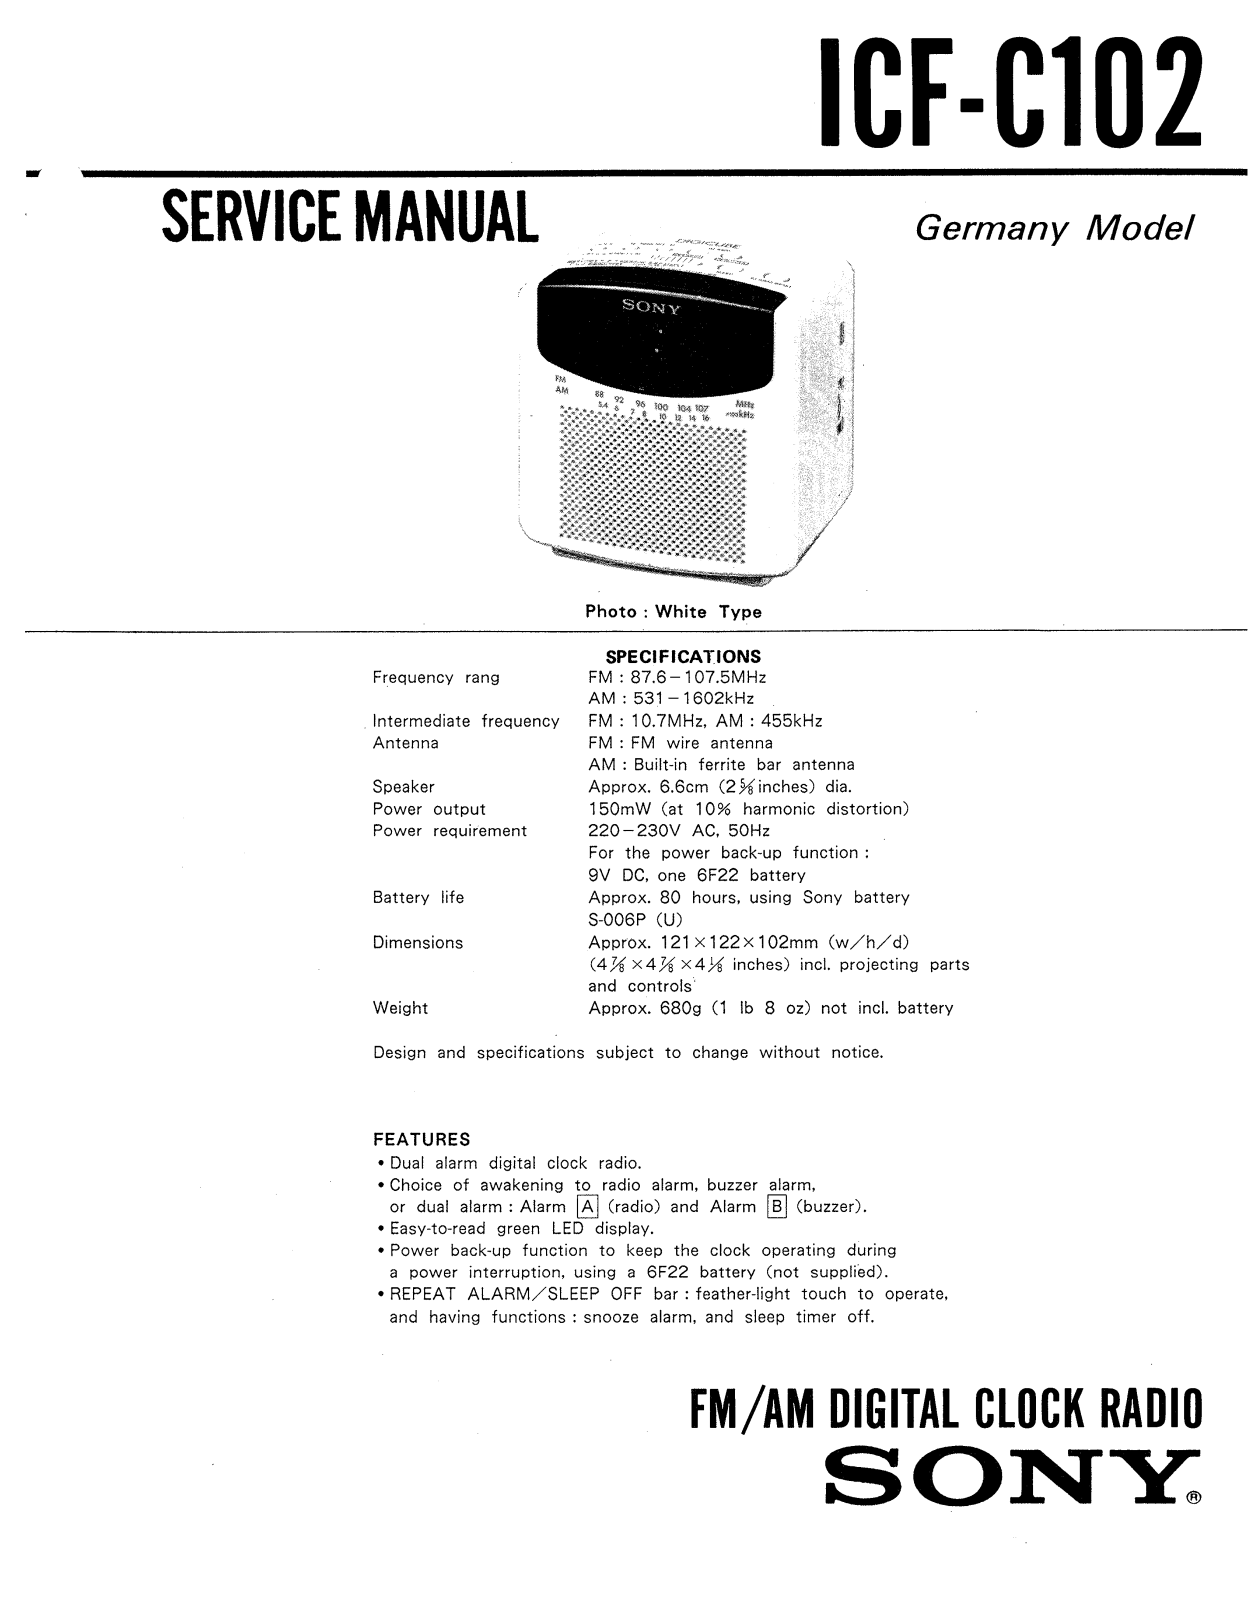 Sony ICFC-1012 Service manual